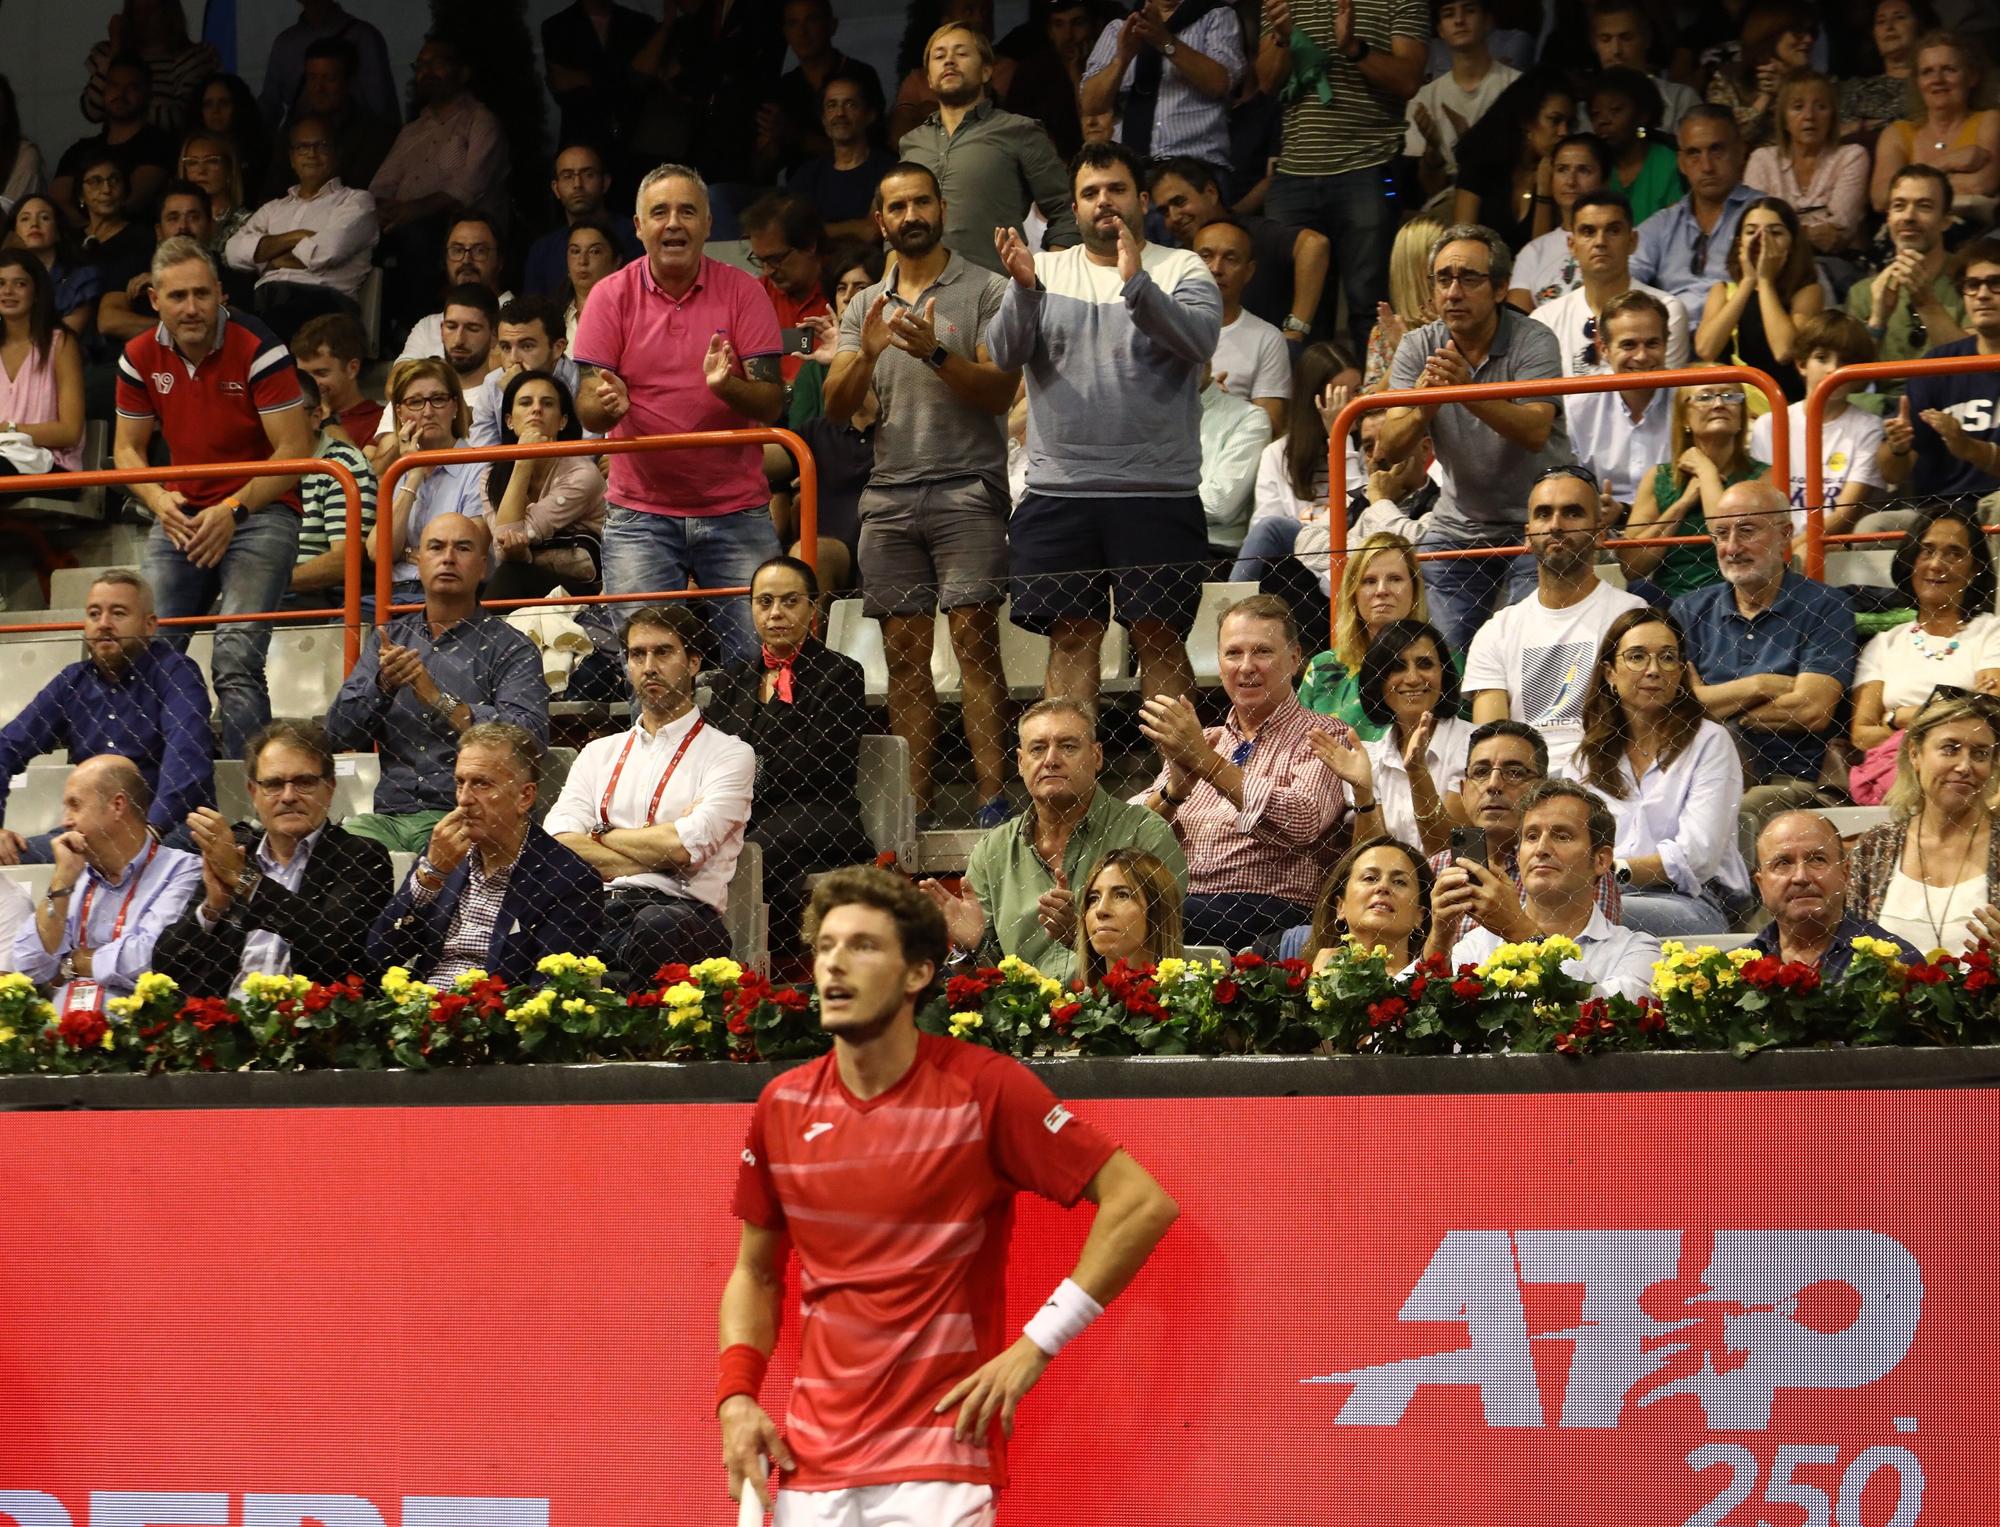 El partido entre Pablo Carreño y Arthur Rinderknech en el Gijón Open